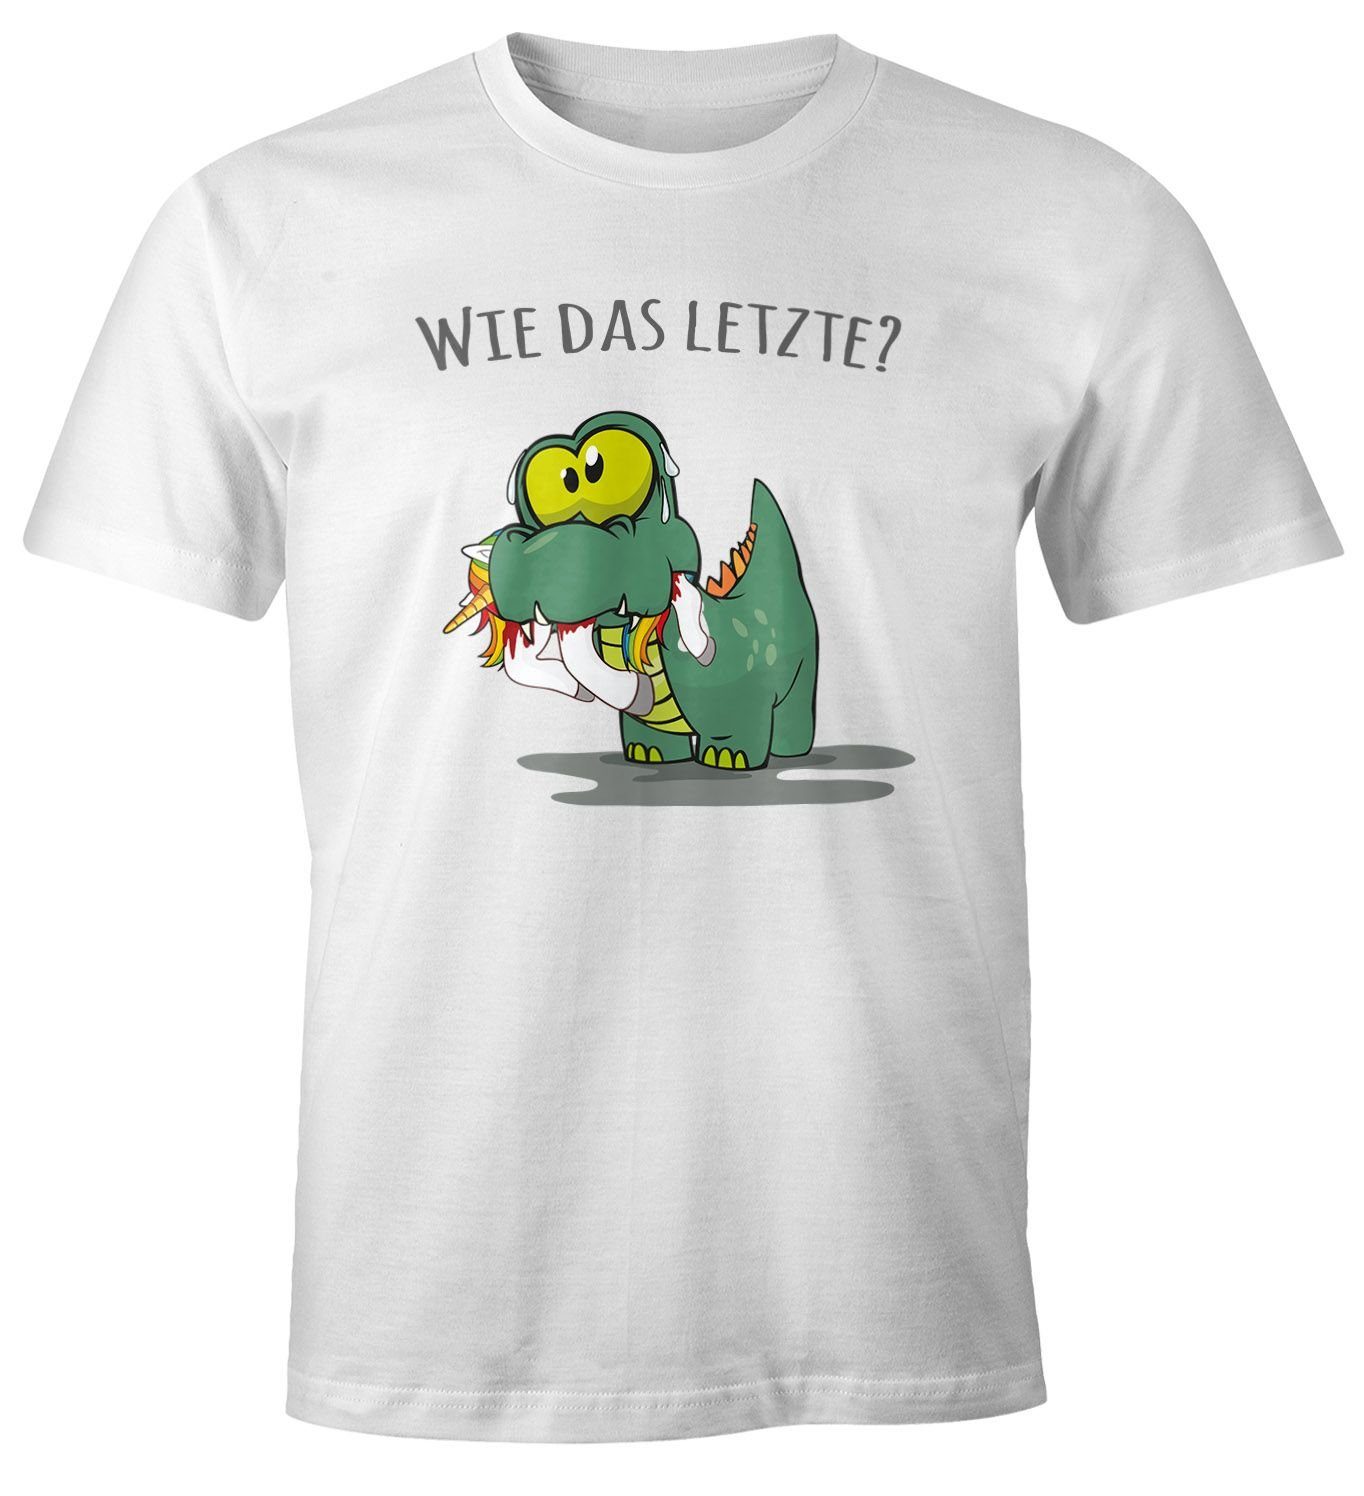 MoonWorks Print-Shirt Herren T-Shirt Fun Motiv kleiner Dino frisst Einhorn Spruch "Wie das Letzte?" Fun-Shirt lustig Moonworks® mit Print